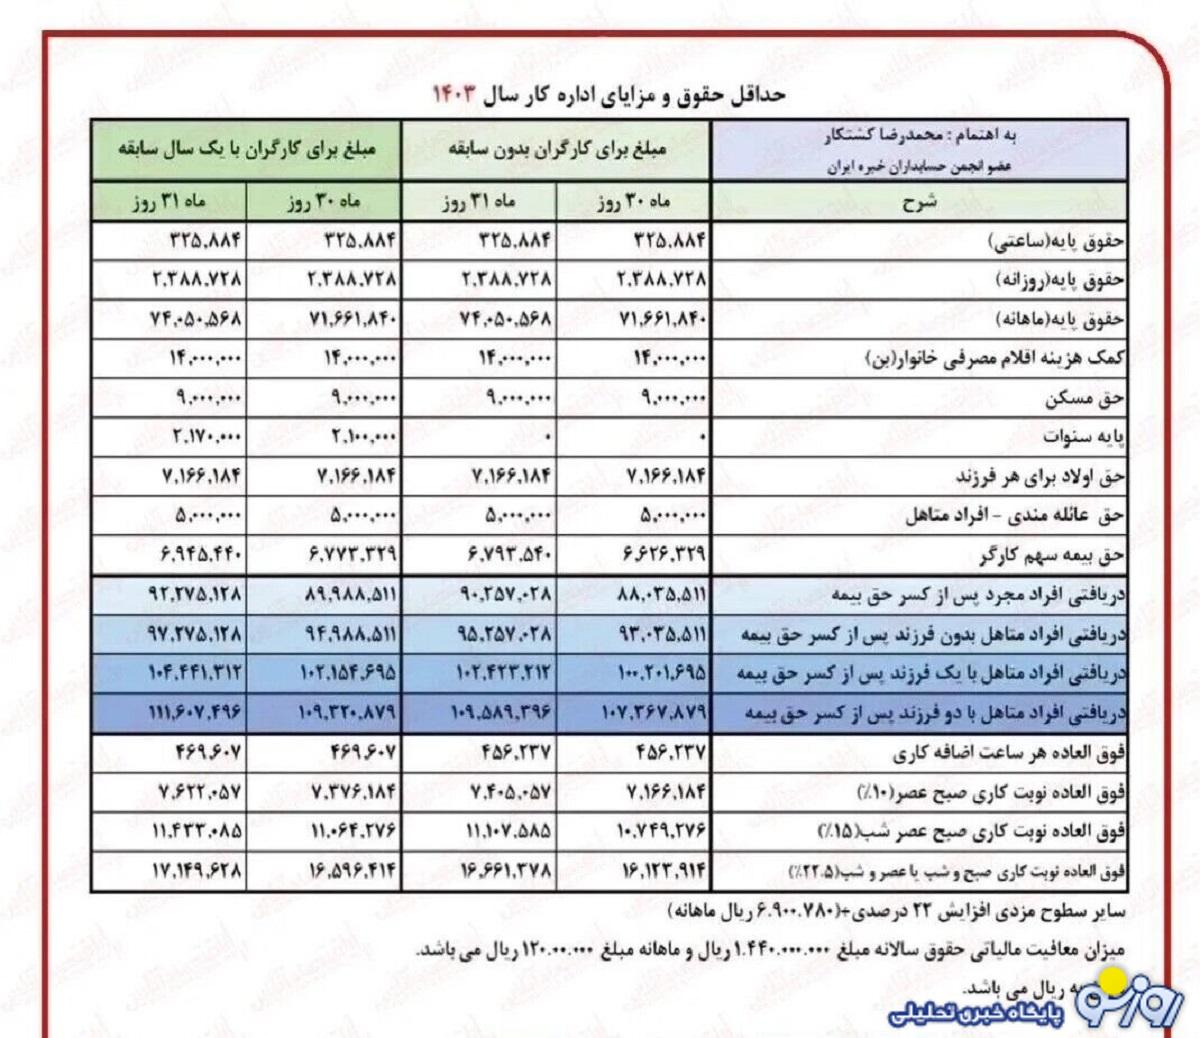 جدول عدد نهایی حقوق بازنشستگان بانک رفاه از خرداد